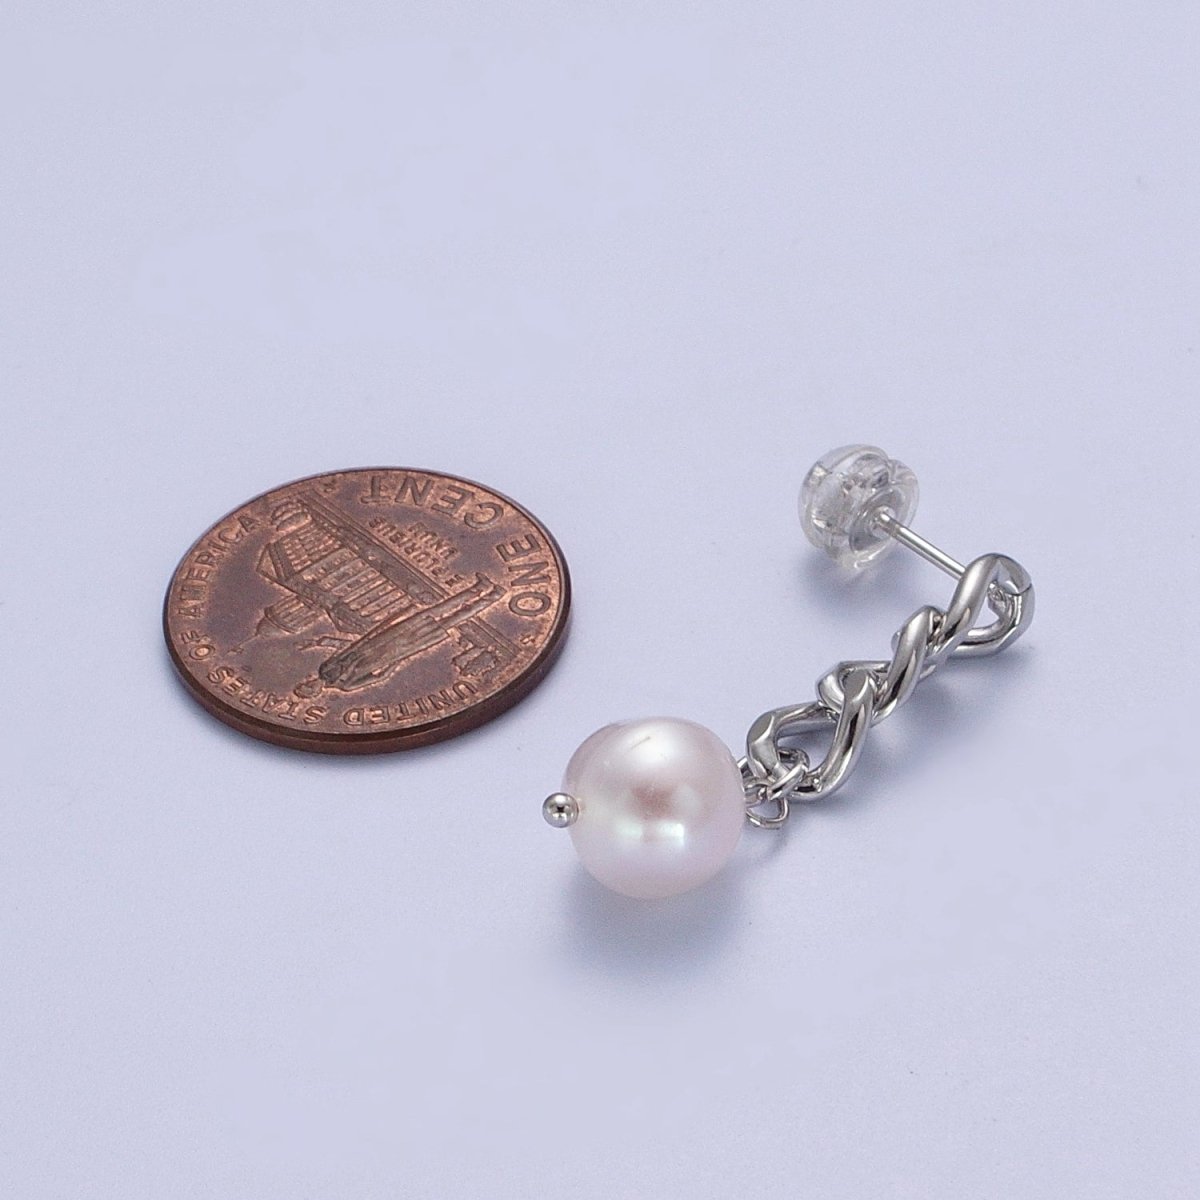 Pearl Dangle Earrings / Chain Earrings Gold Silver Pearl Earrings Stud Earring Curb Chain AE-1082 AE-1083 - DLUXCA